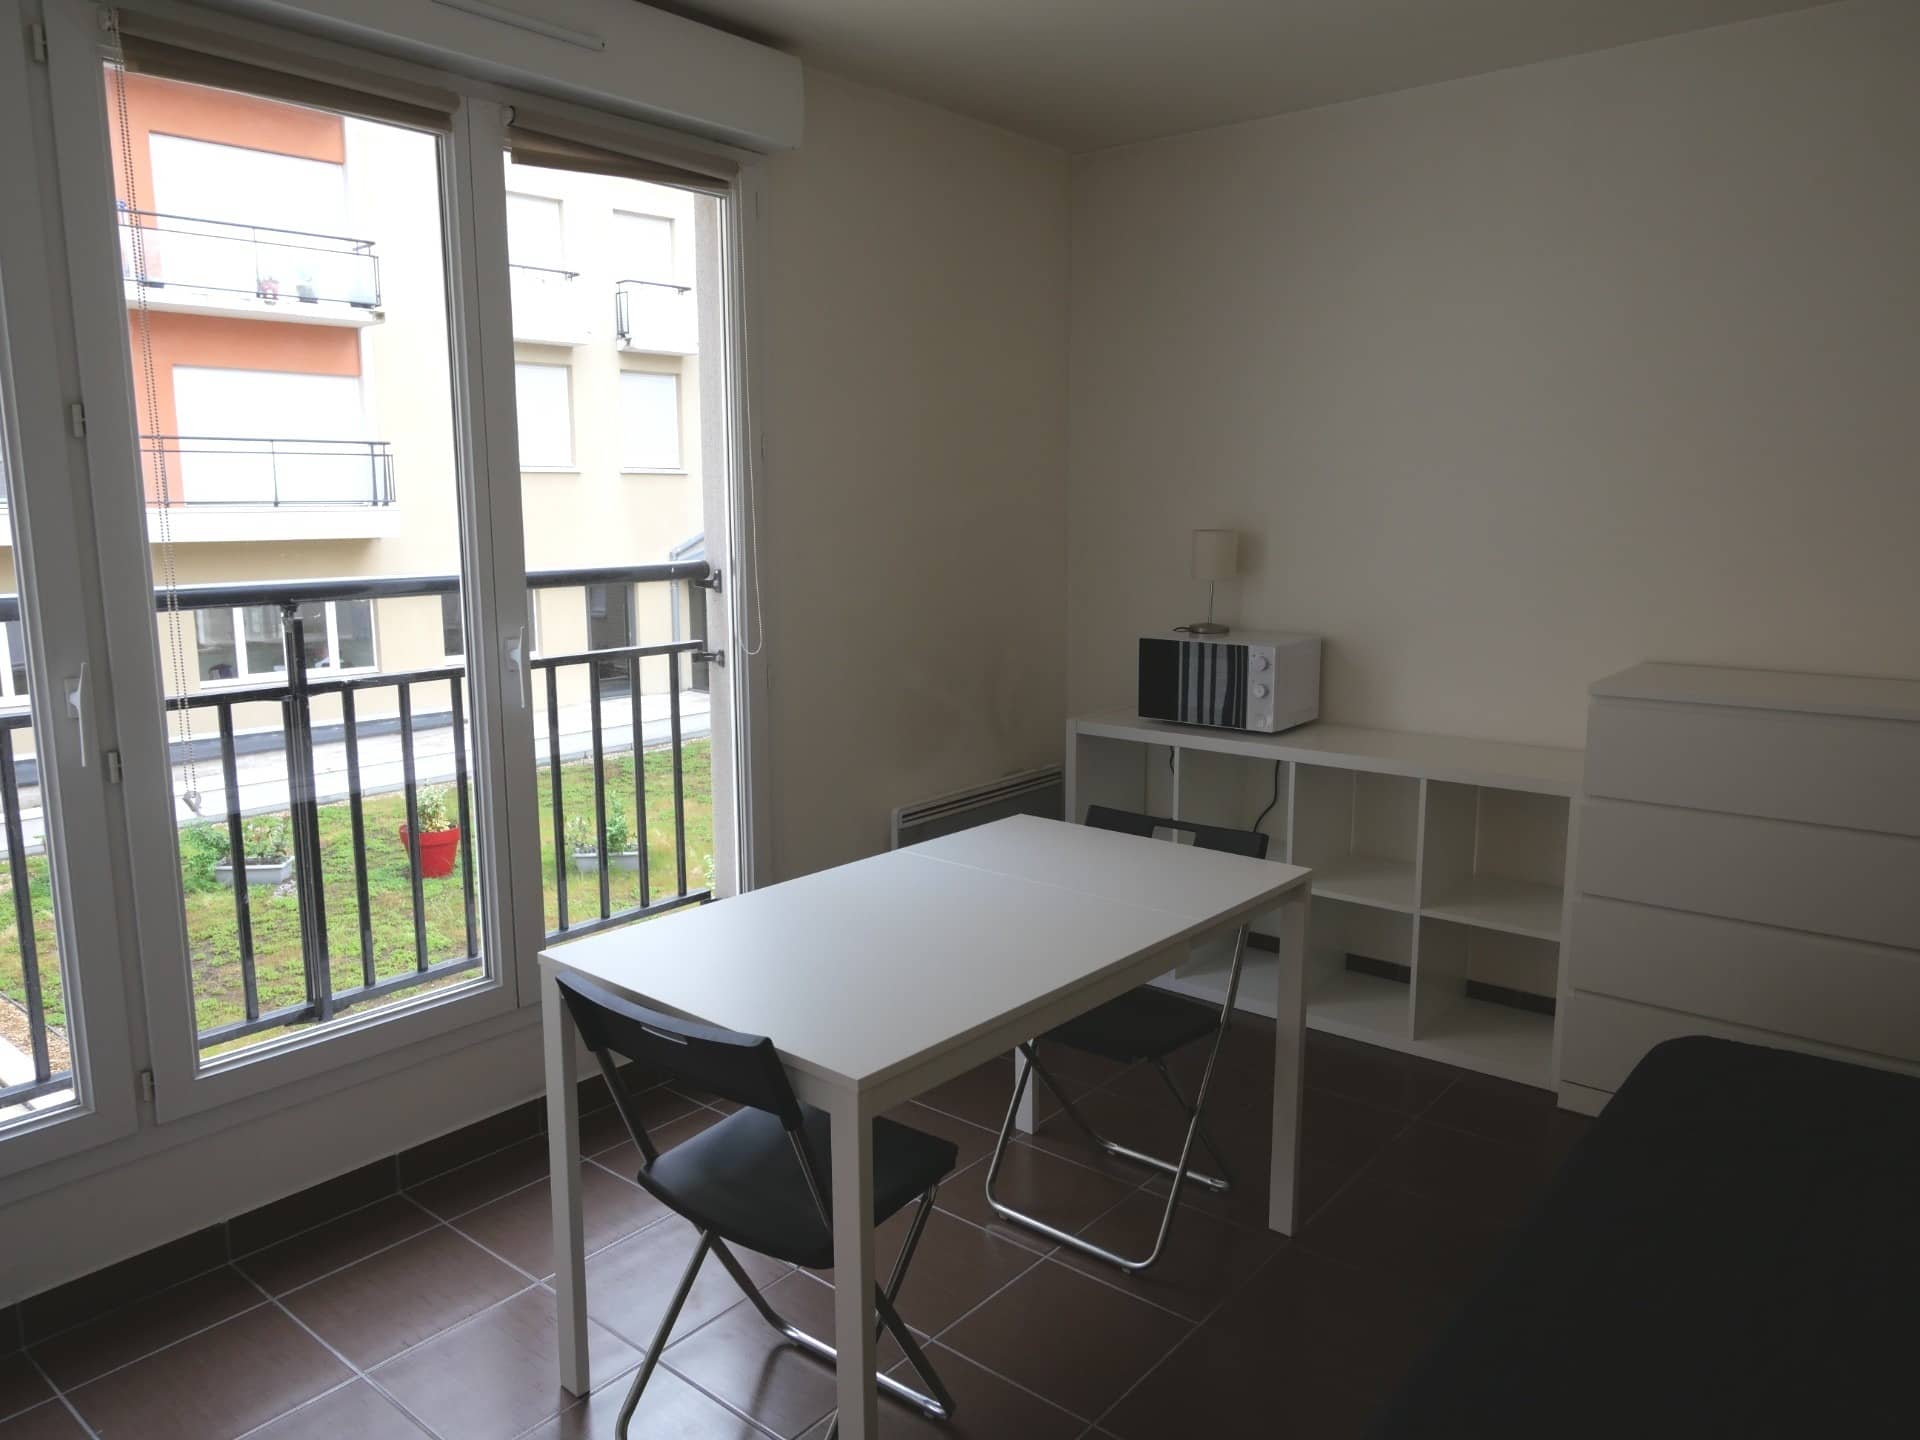 Annonce immobilière à louer Appartement type F1 Le Havre 158